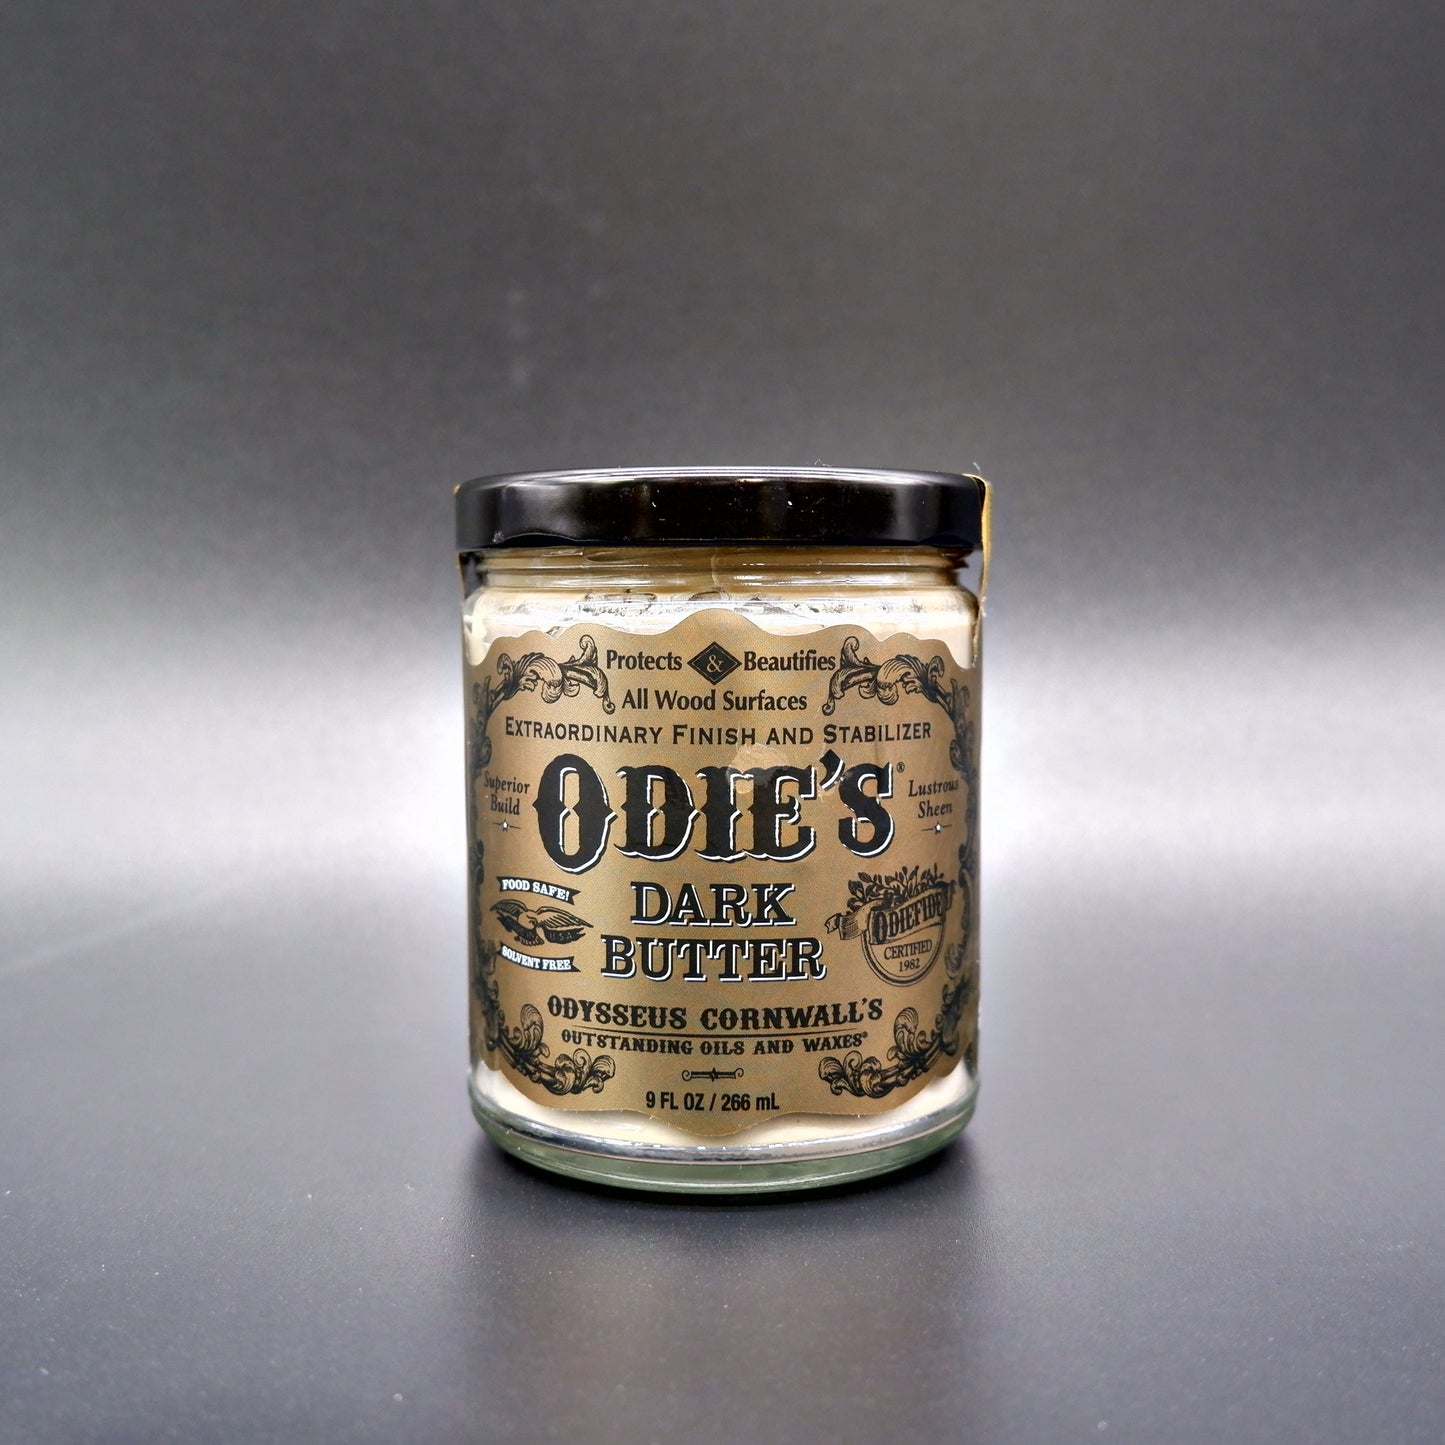 Odie's Dark Wood Butter